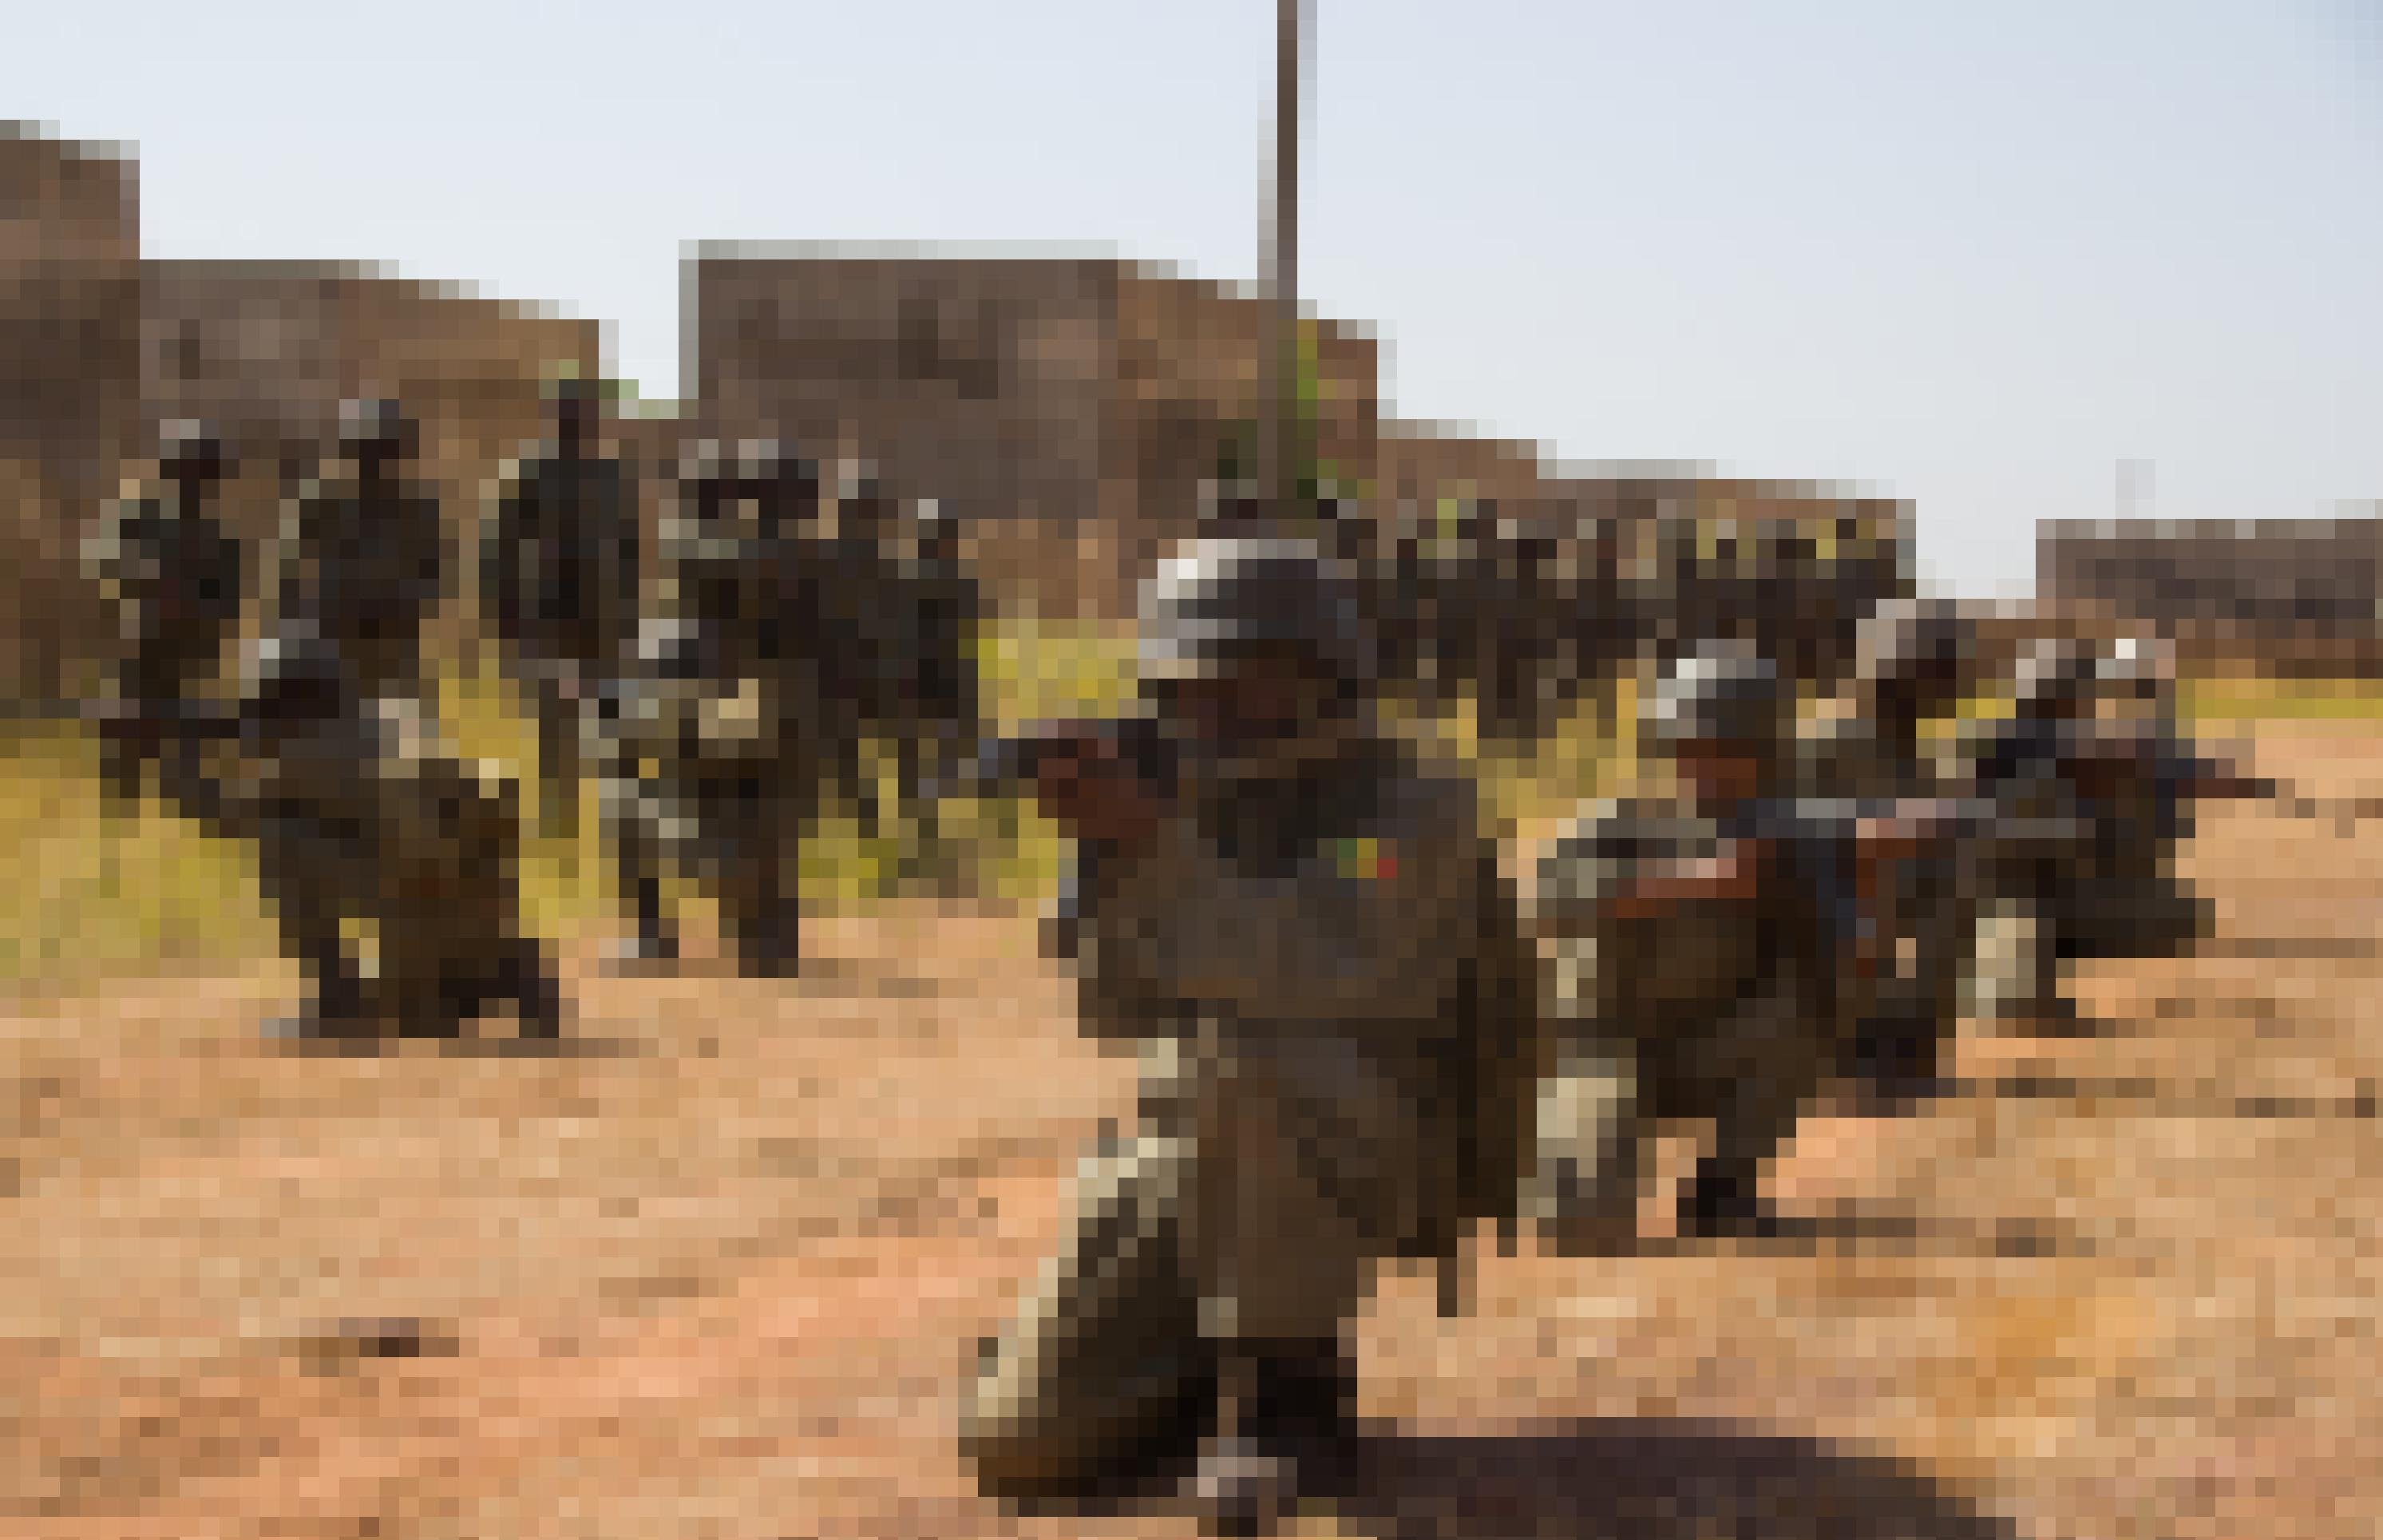 Malische Soldaten knien hintereinander in einer Reihe, die Gewehre im Anschlag. Sie üben den Häuserkampf.